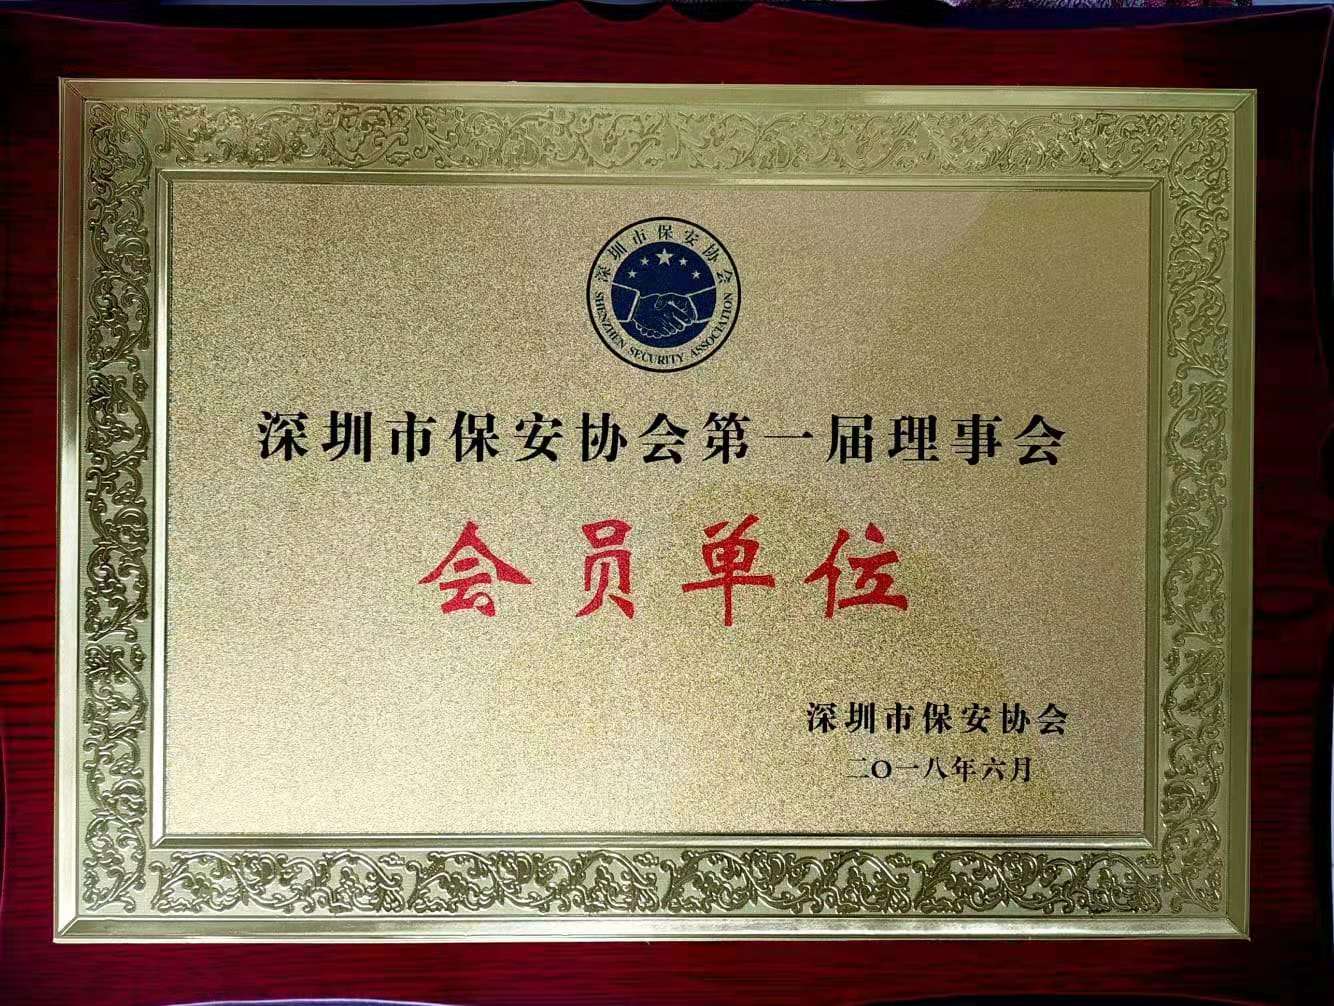 深圳市保安协会第一届理事会会员单位